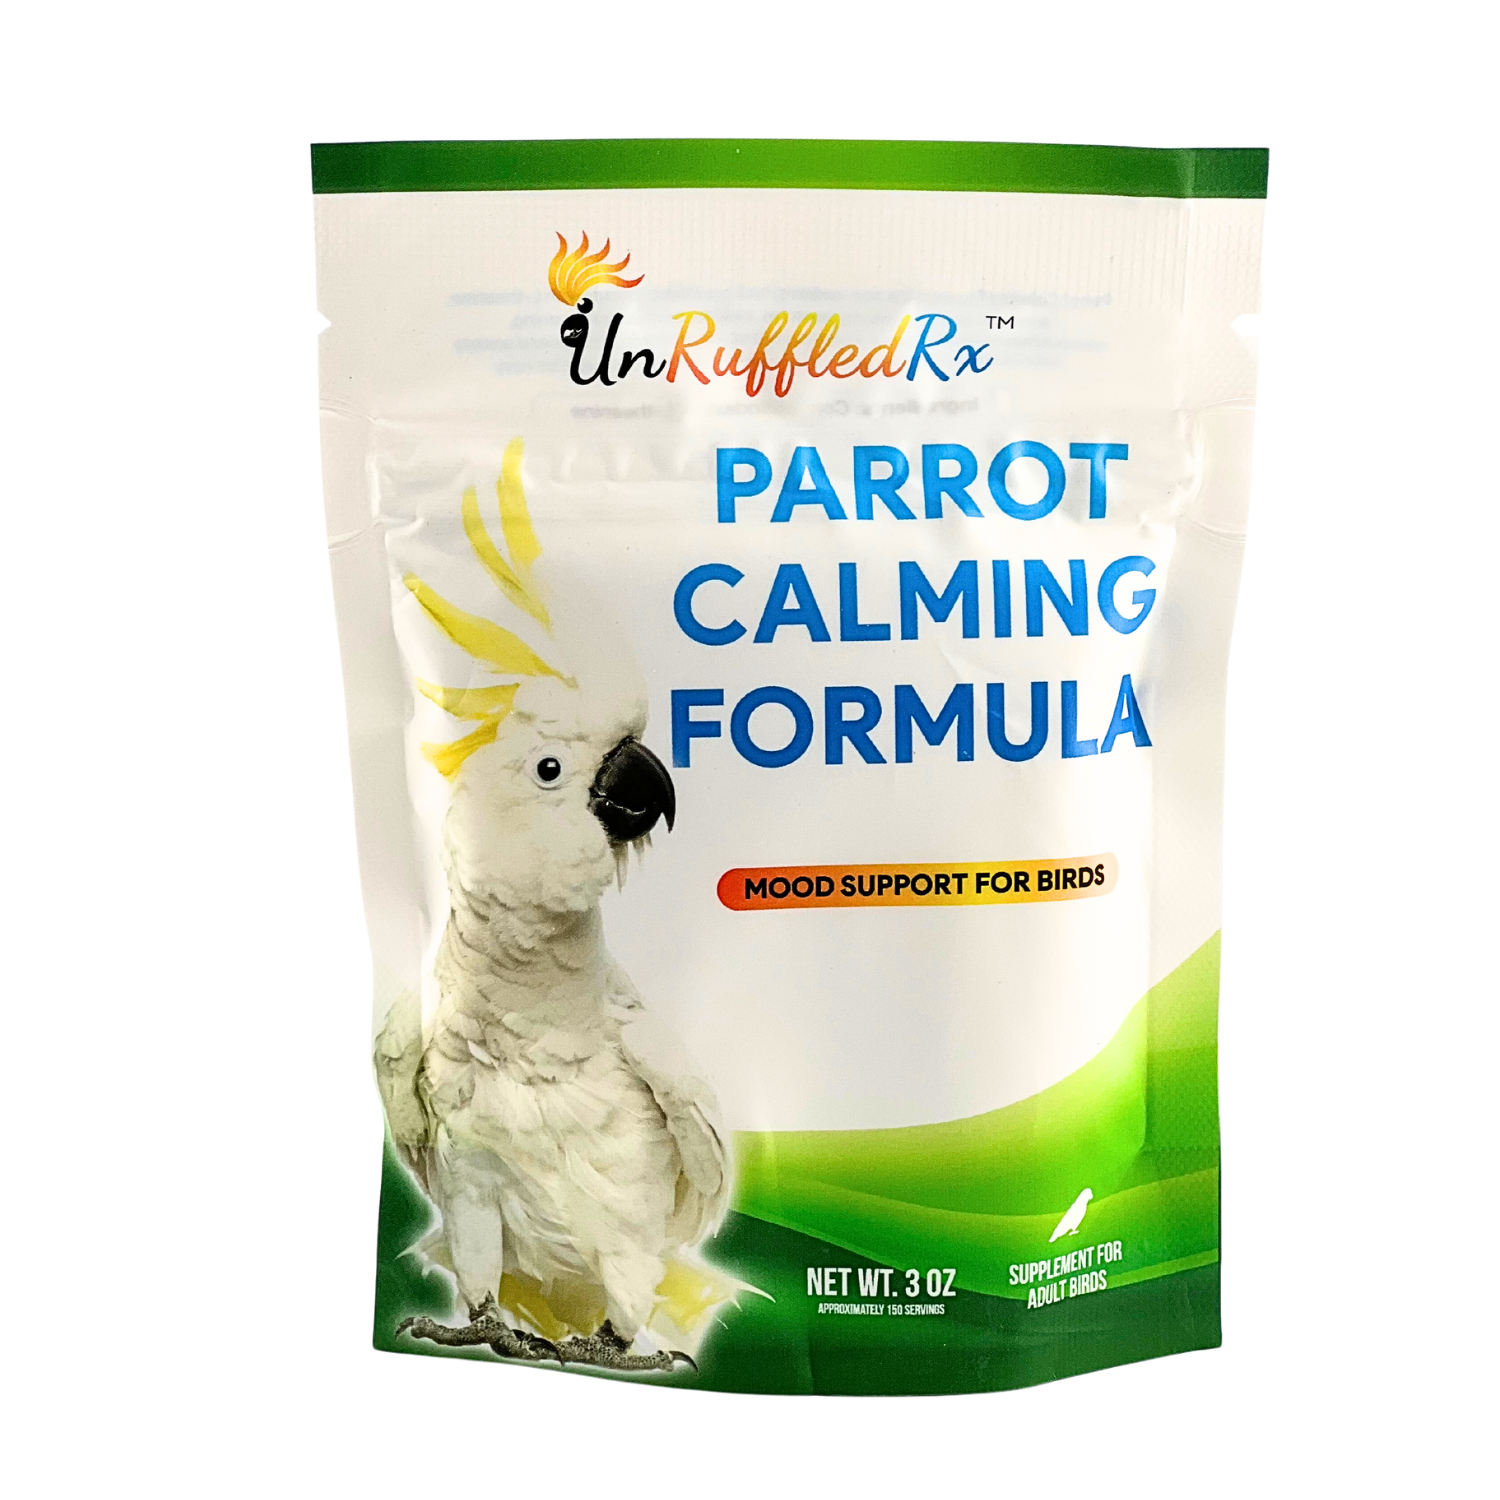 Parrot Calming Formula